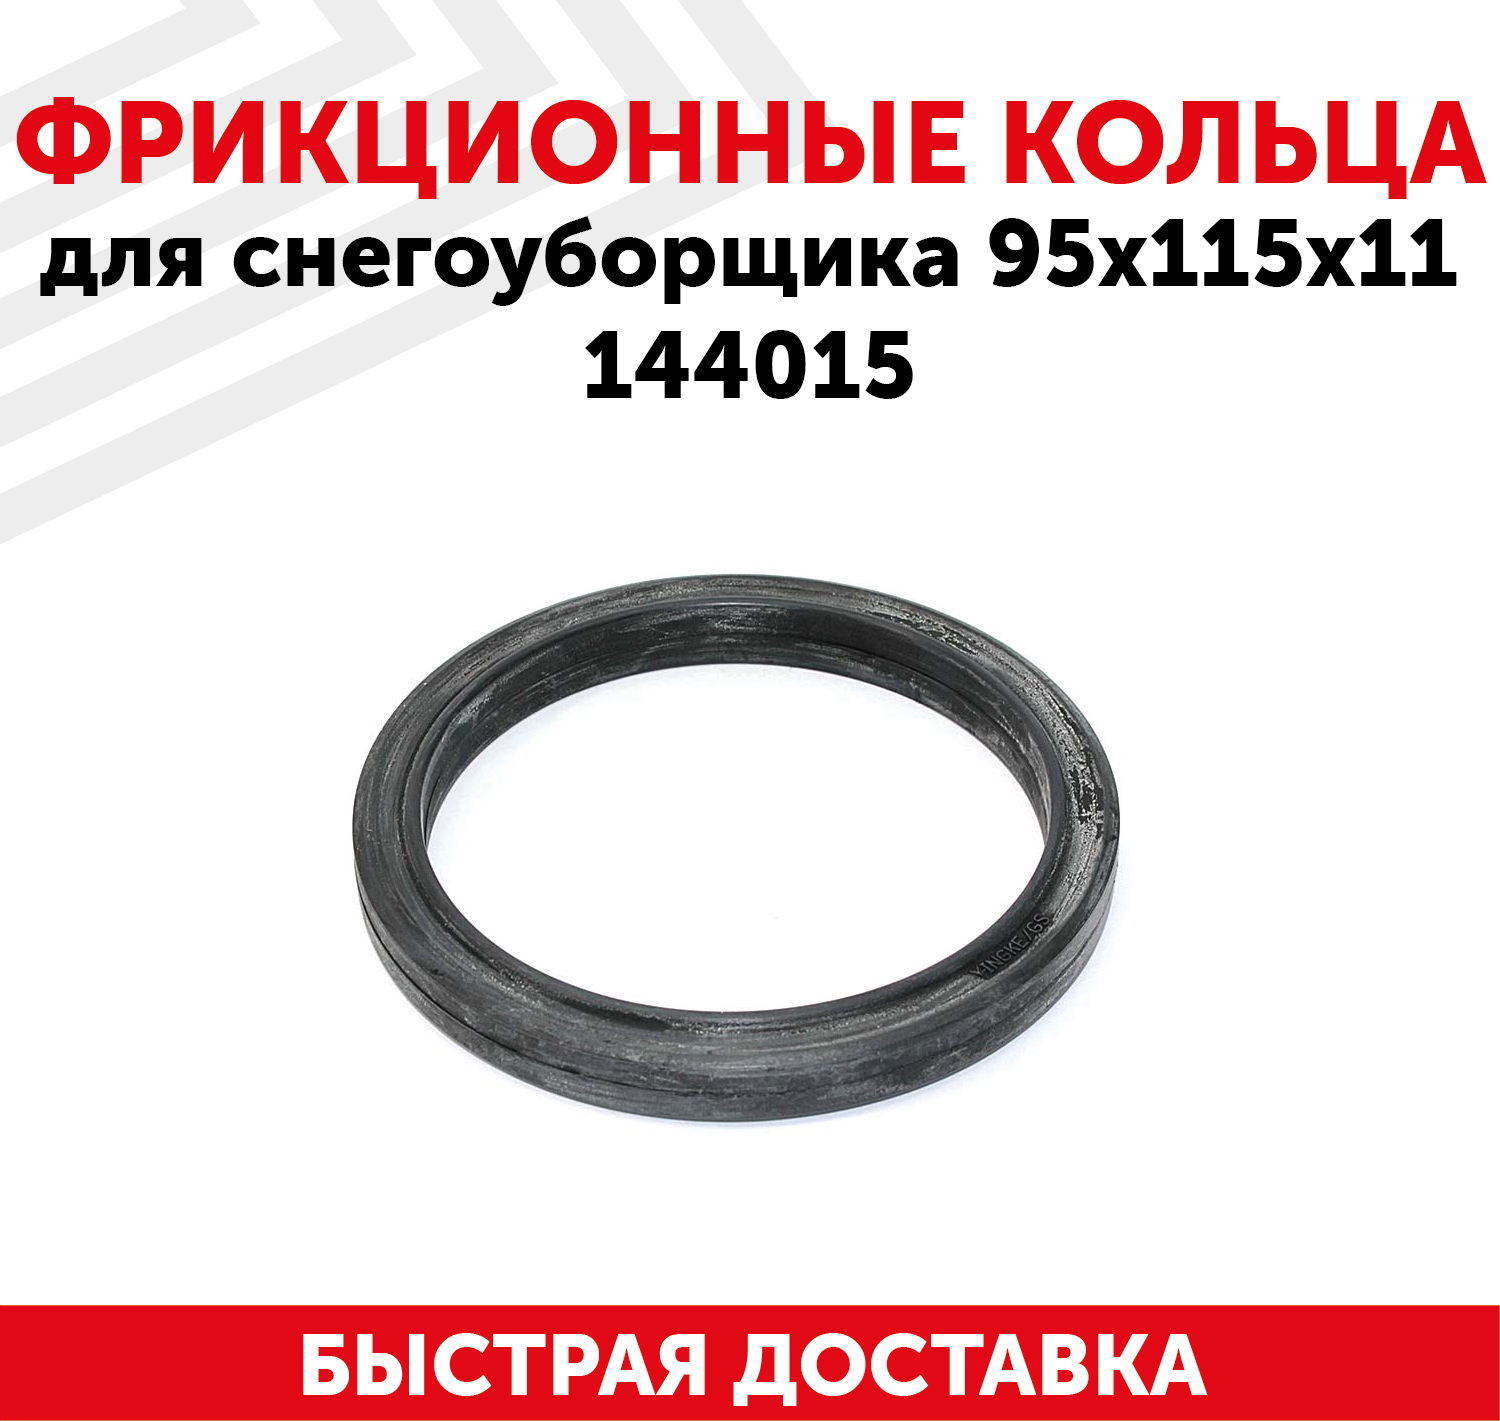 Фрикционные кольца для снегоуборщика (95x115x11) 144015